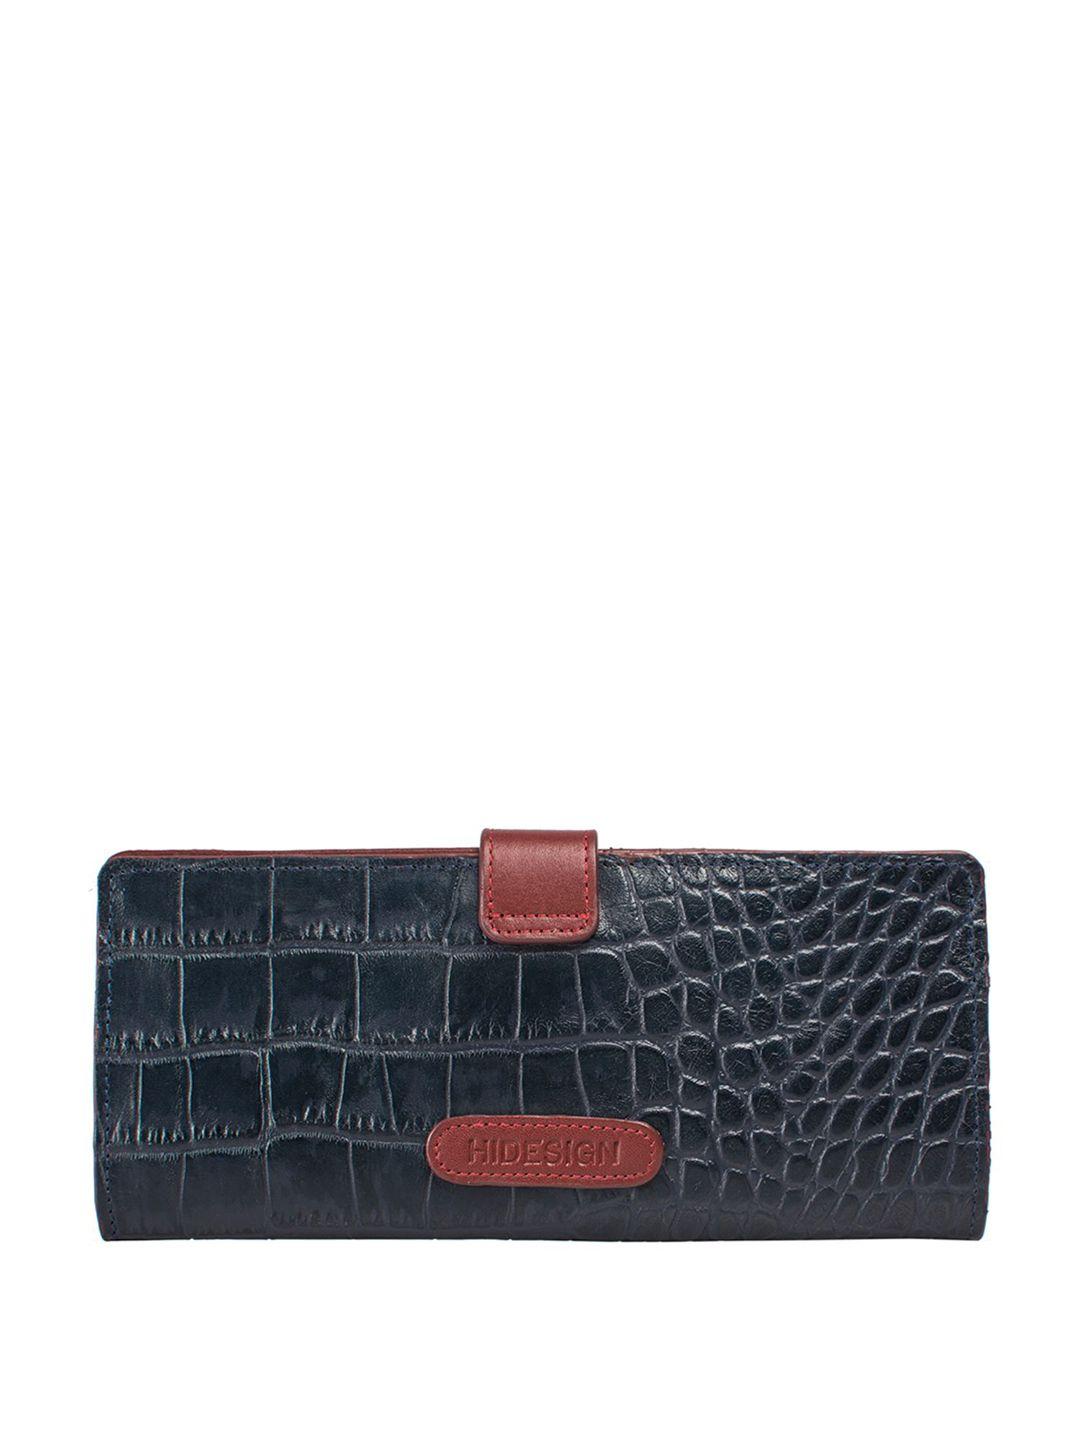 hidesign animal textured purse clutch